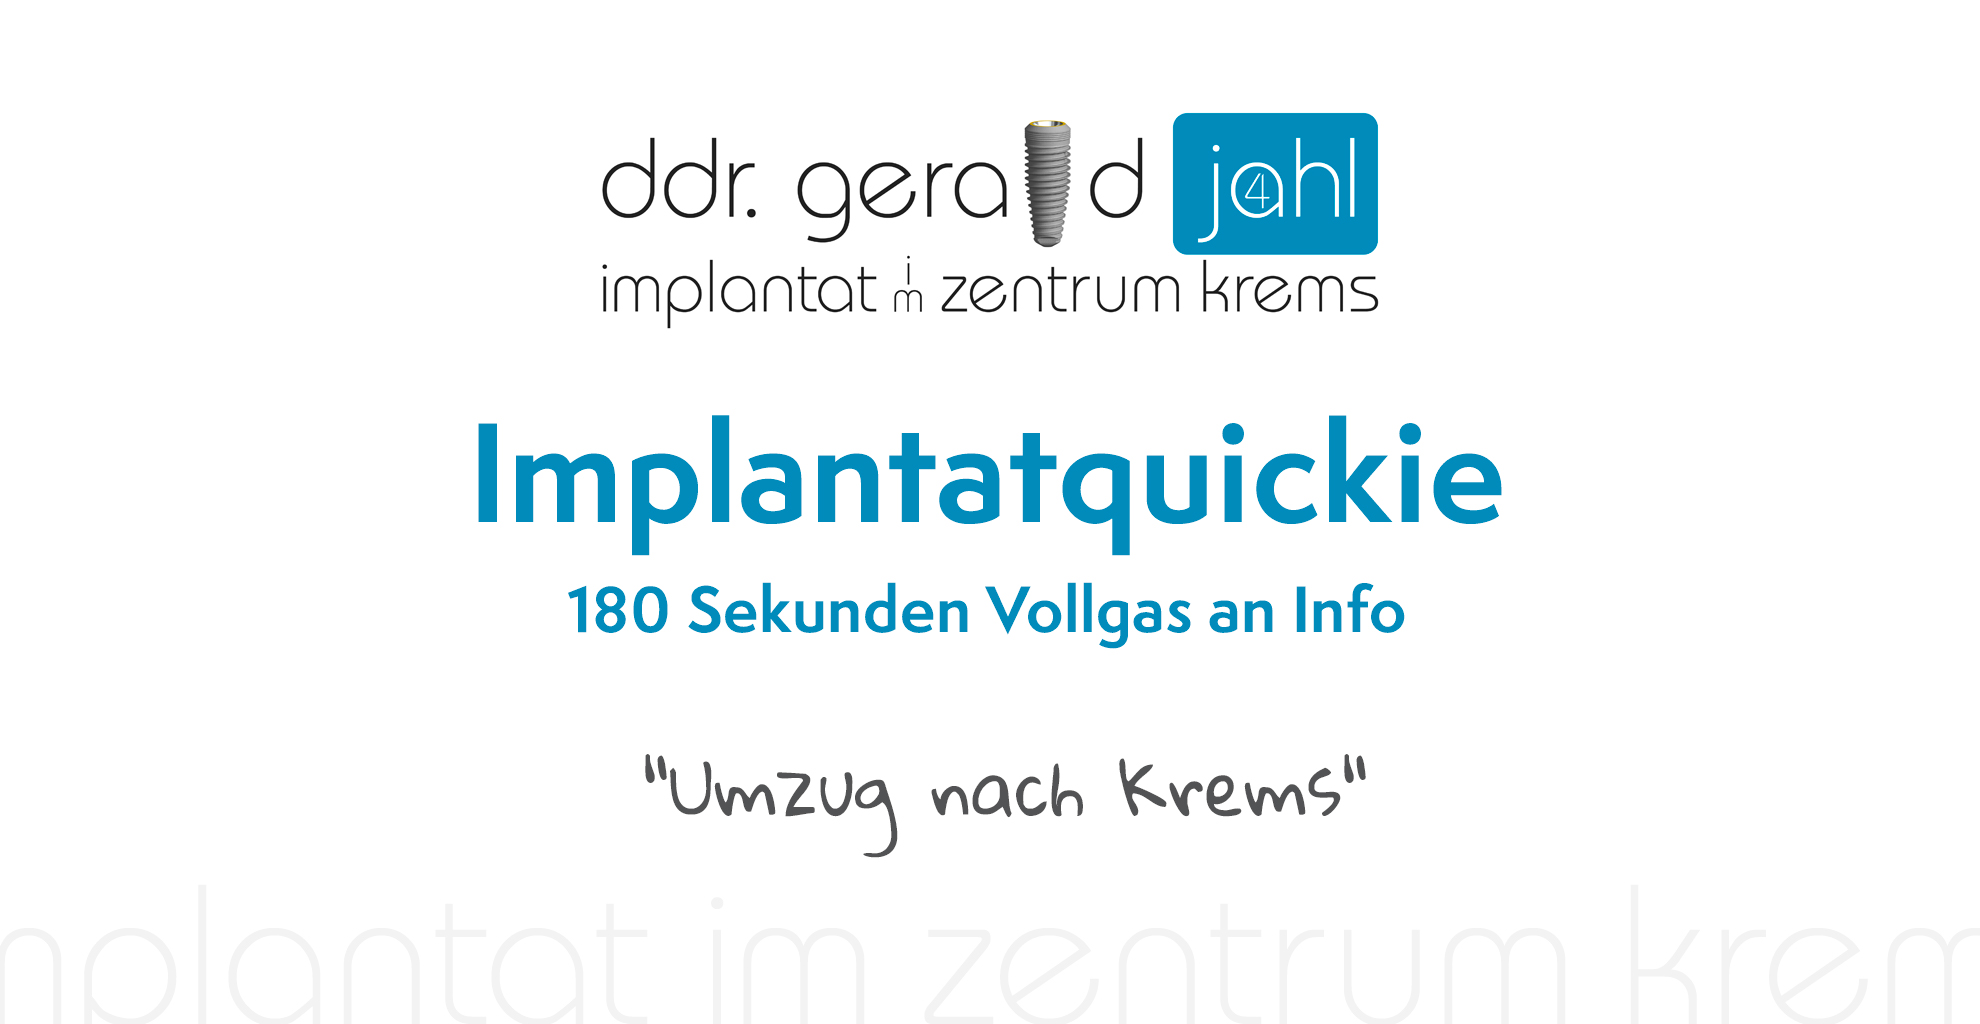 Implantatquickie - 180 Sekunden Vollgas an Info - 